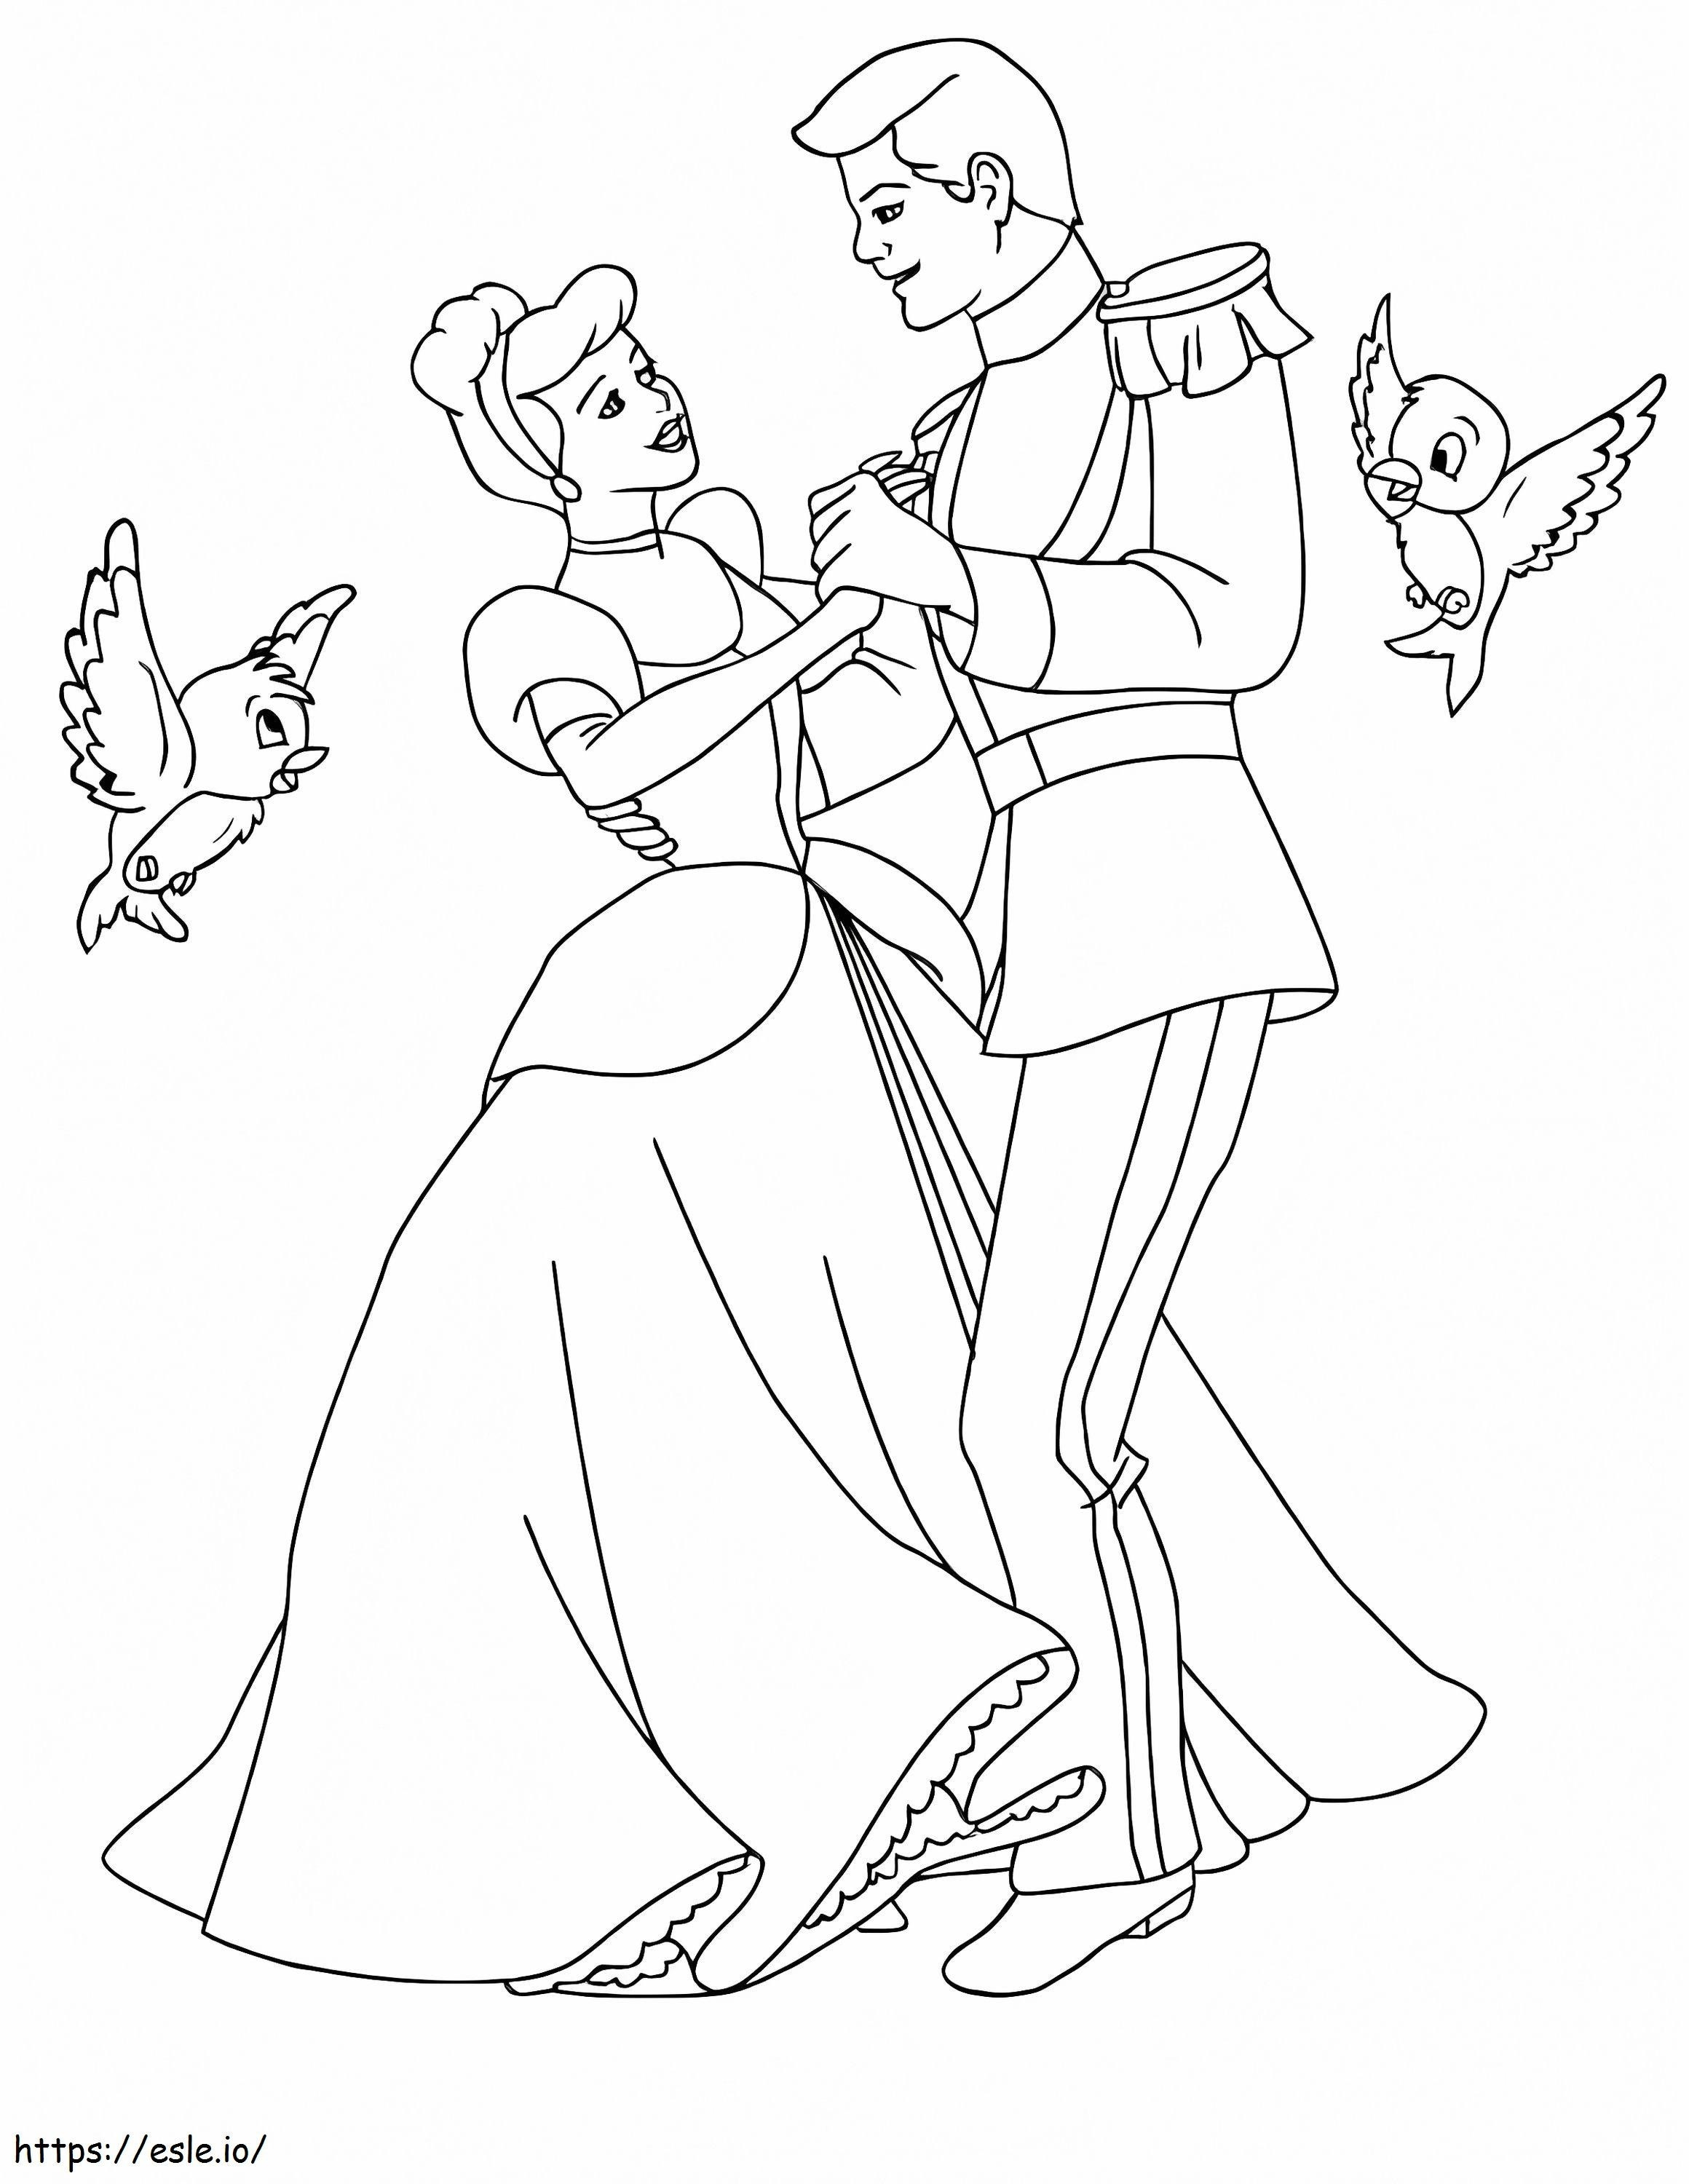 Cenerentola e il principe che balla con due uccelli da colorare